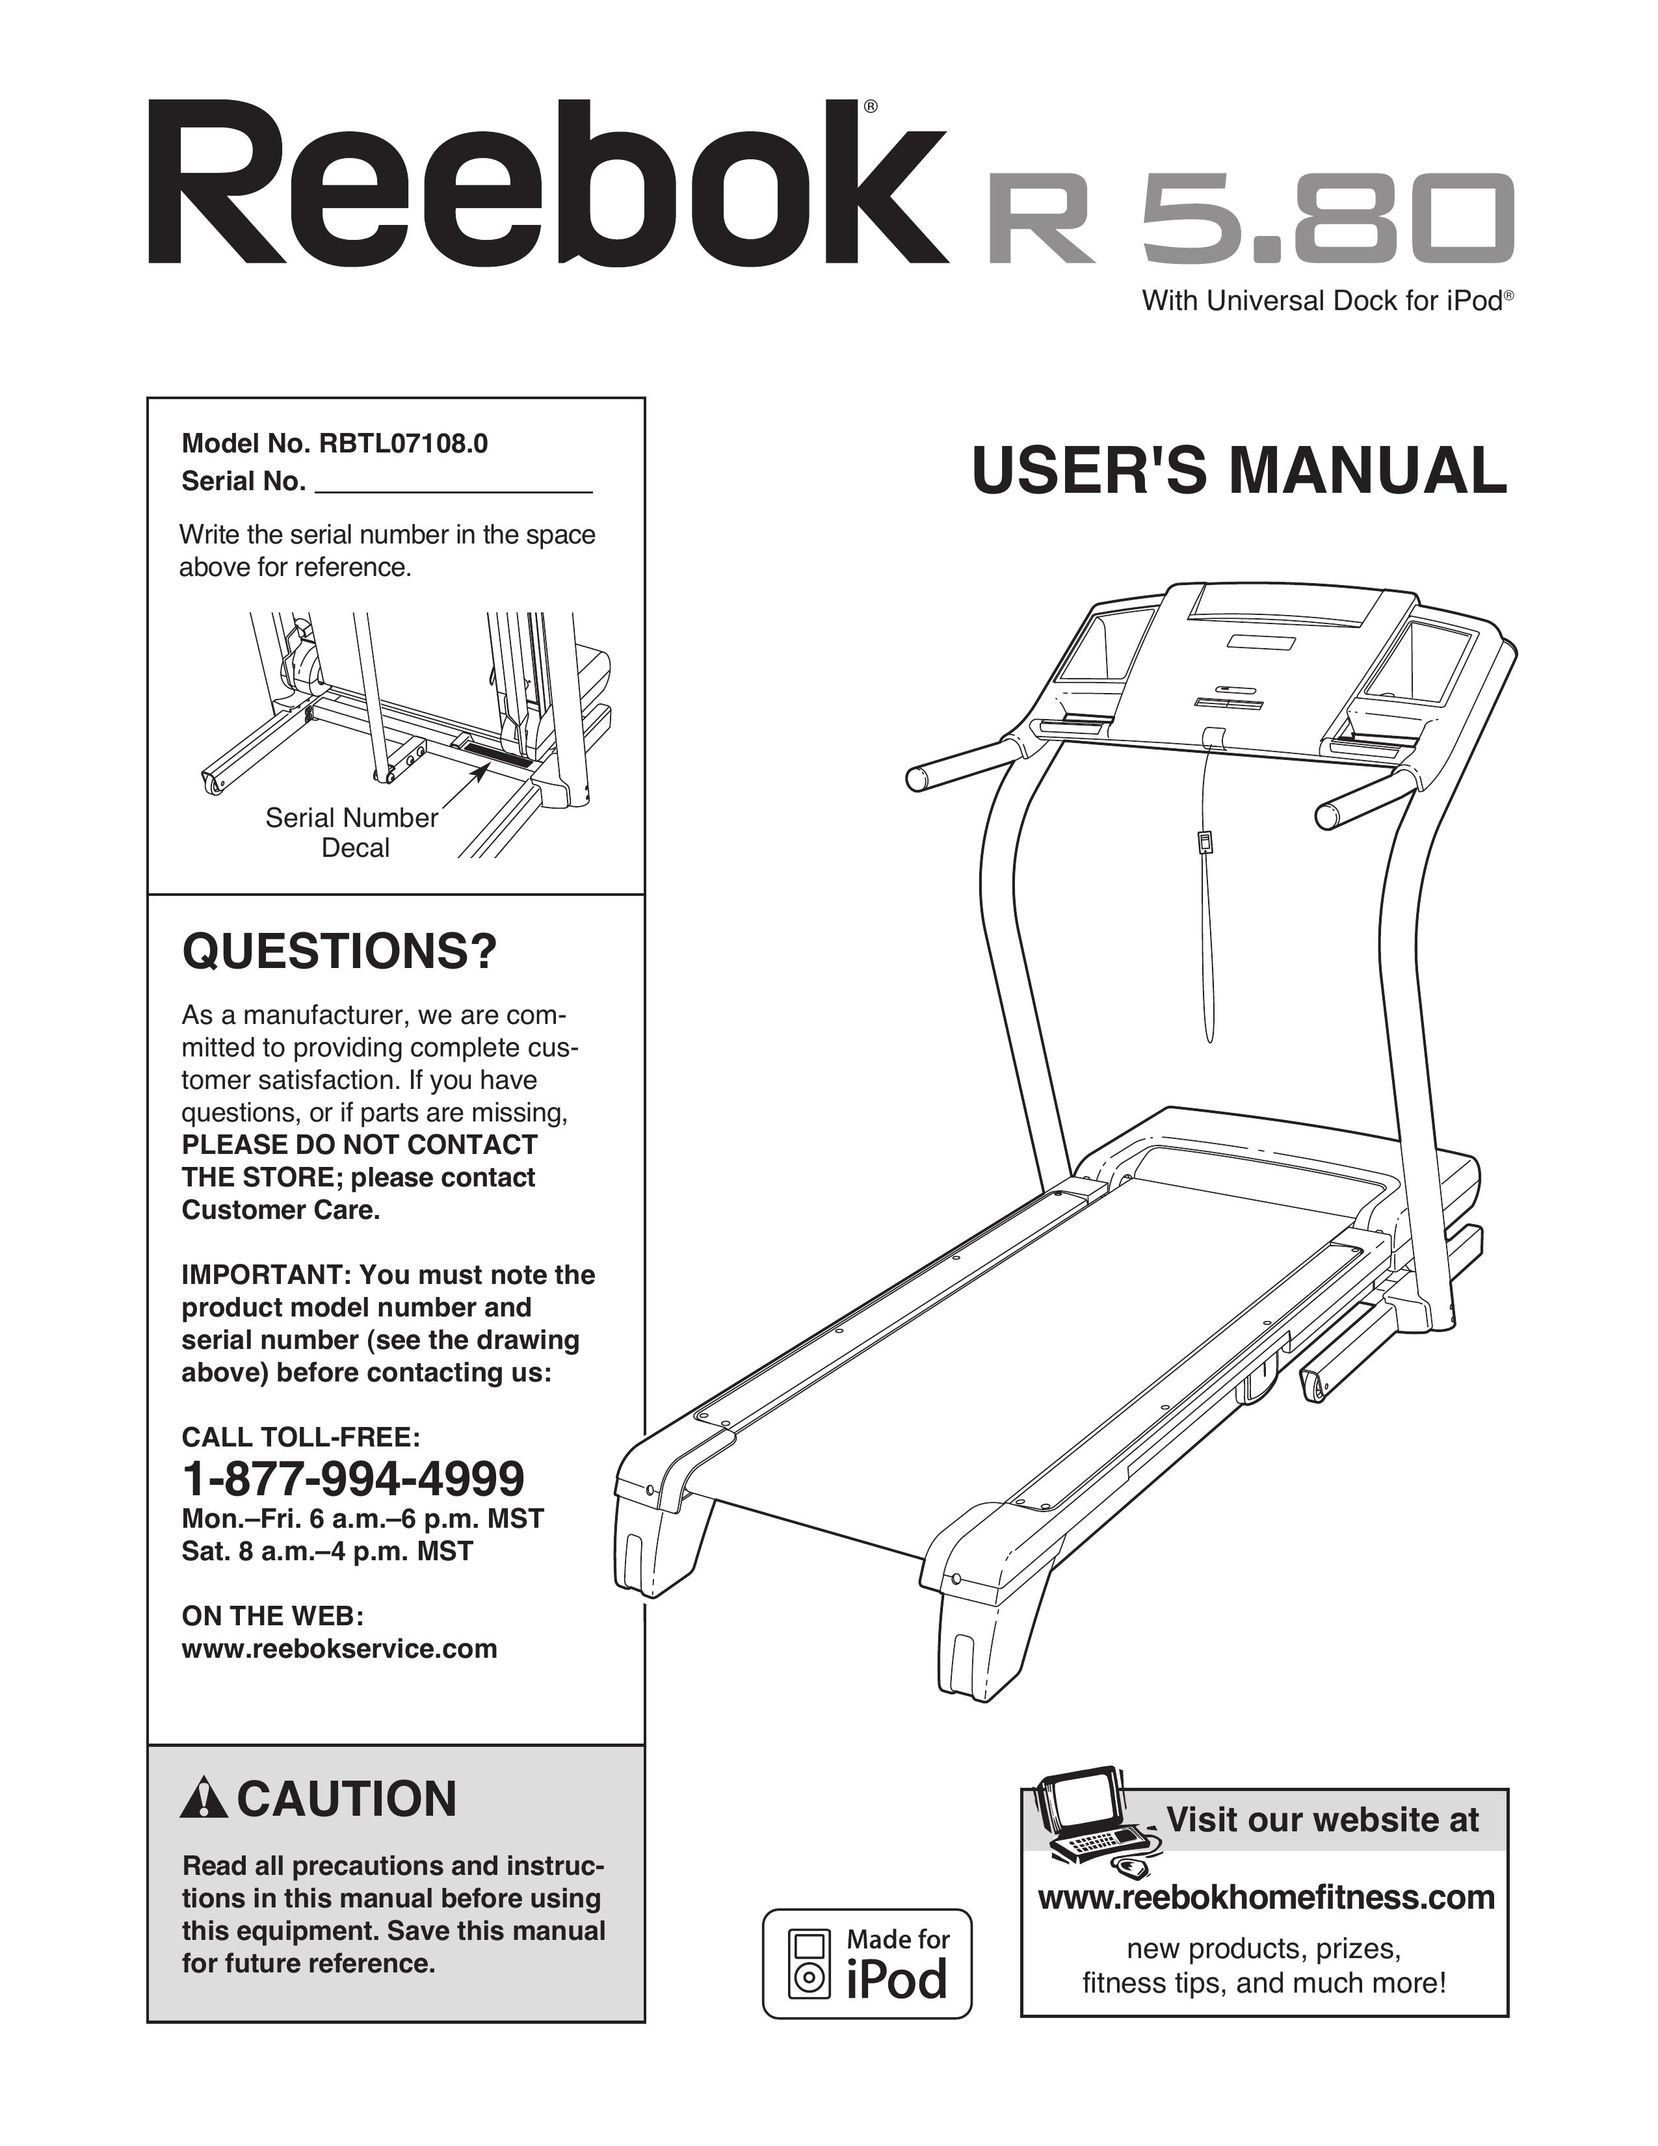 Reebok Fitness RBTL07108.0 Treadmill User Manual